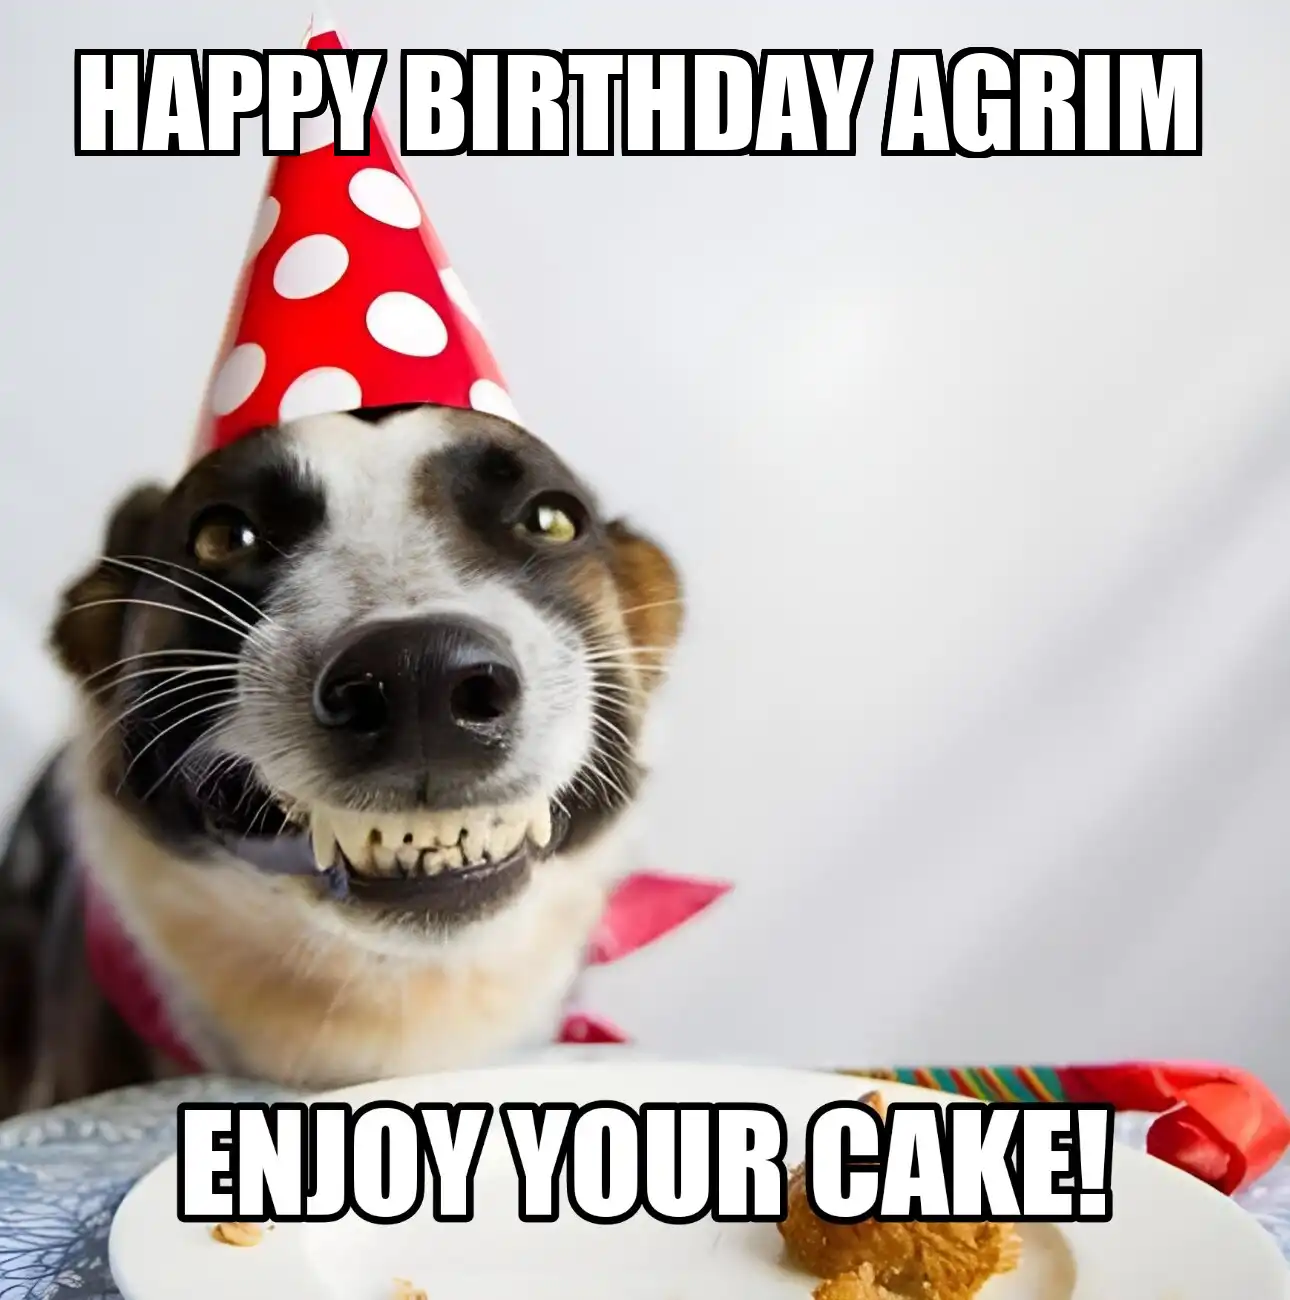 Happy Birthday Agrim Enjoy Your Cake Dog Meme